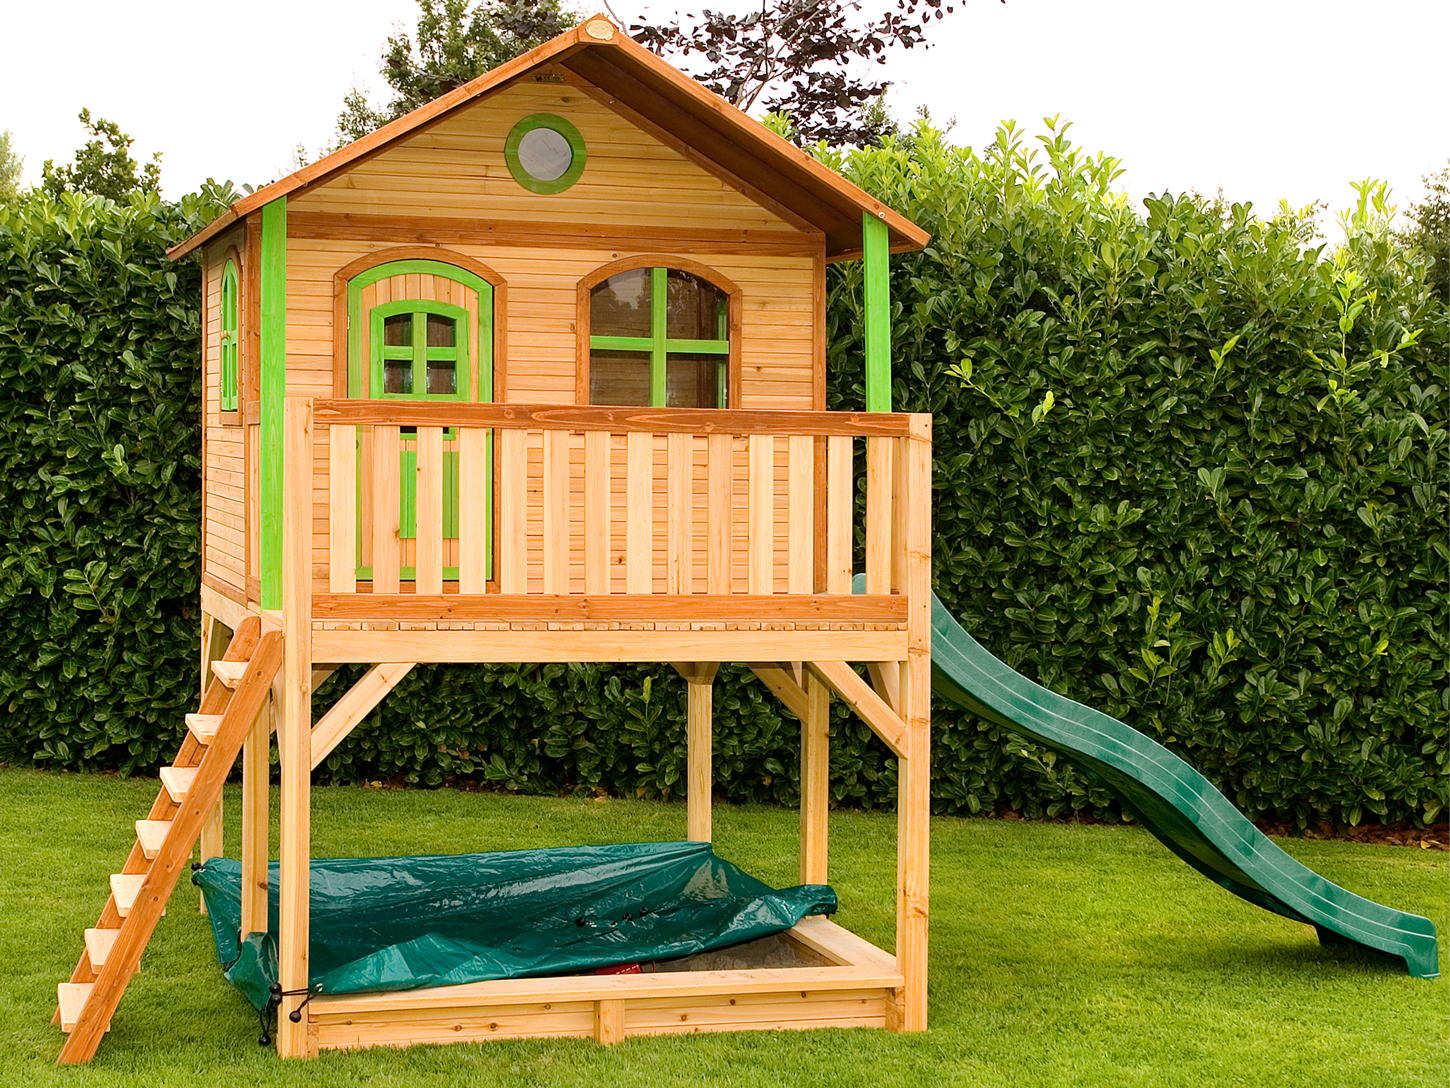 Holz-Kinderspielhaus auf Stelzen Sandkasten Garten 173x113cm Innenmaß braun/grün